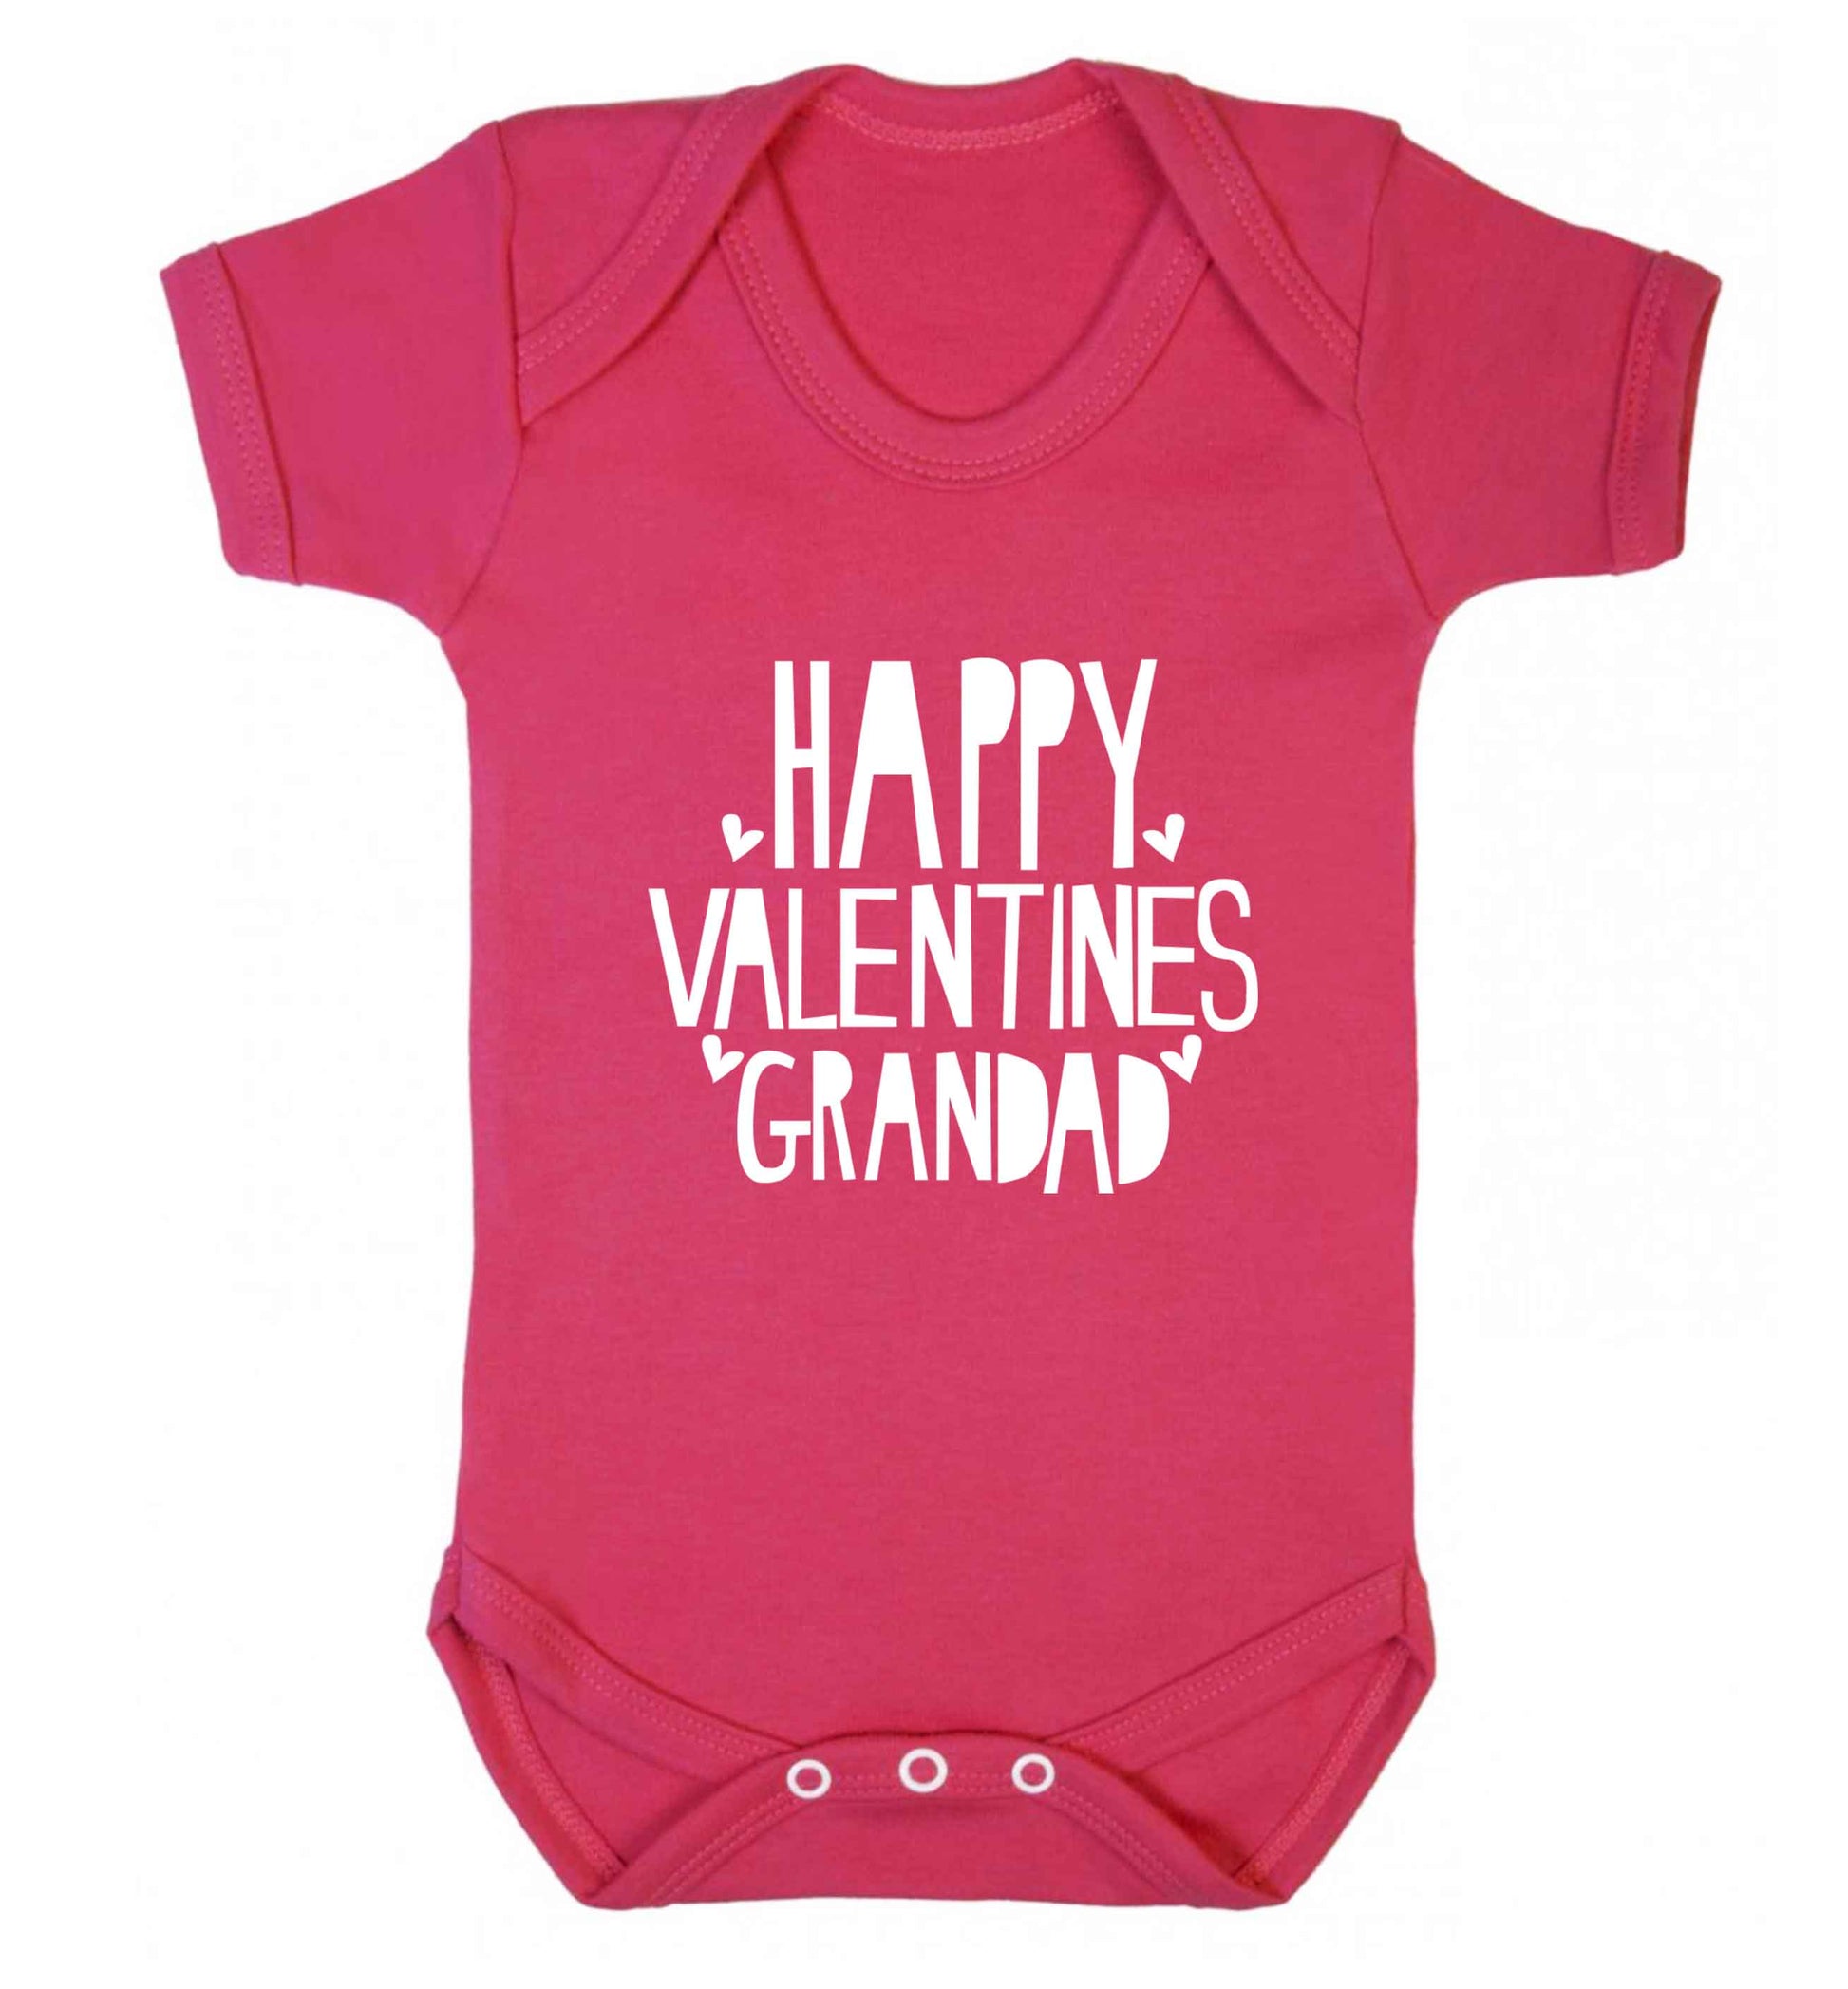 Happy valentines grandad baby vest dark pink 18-24 months